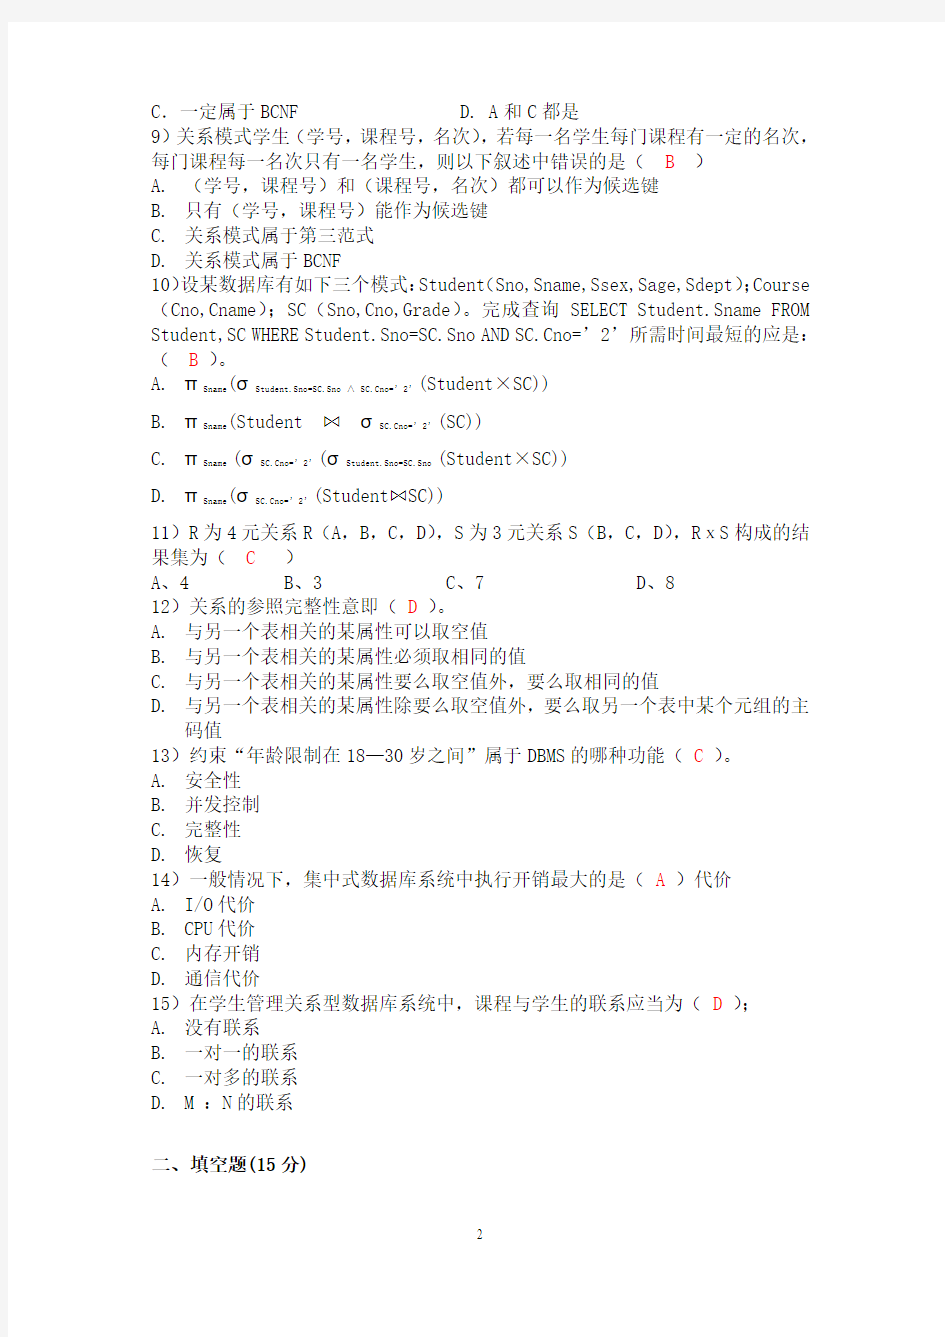 惠州学院数据库期末考试试卷(A 卷)有答案版